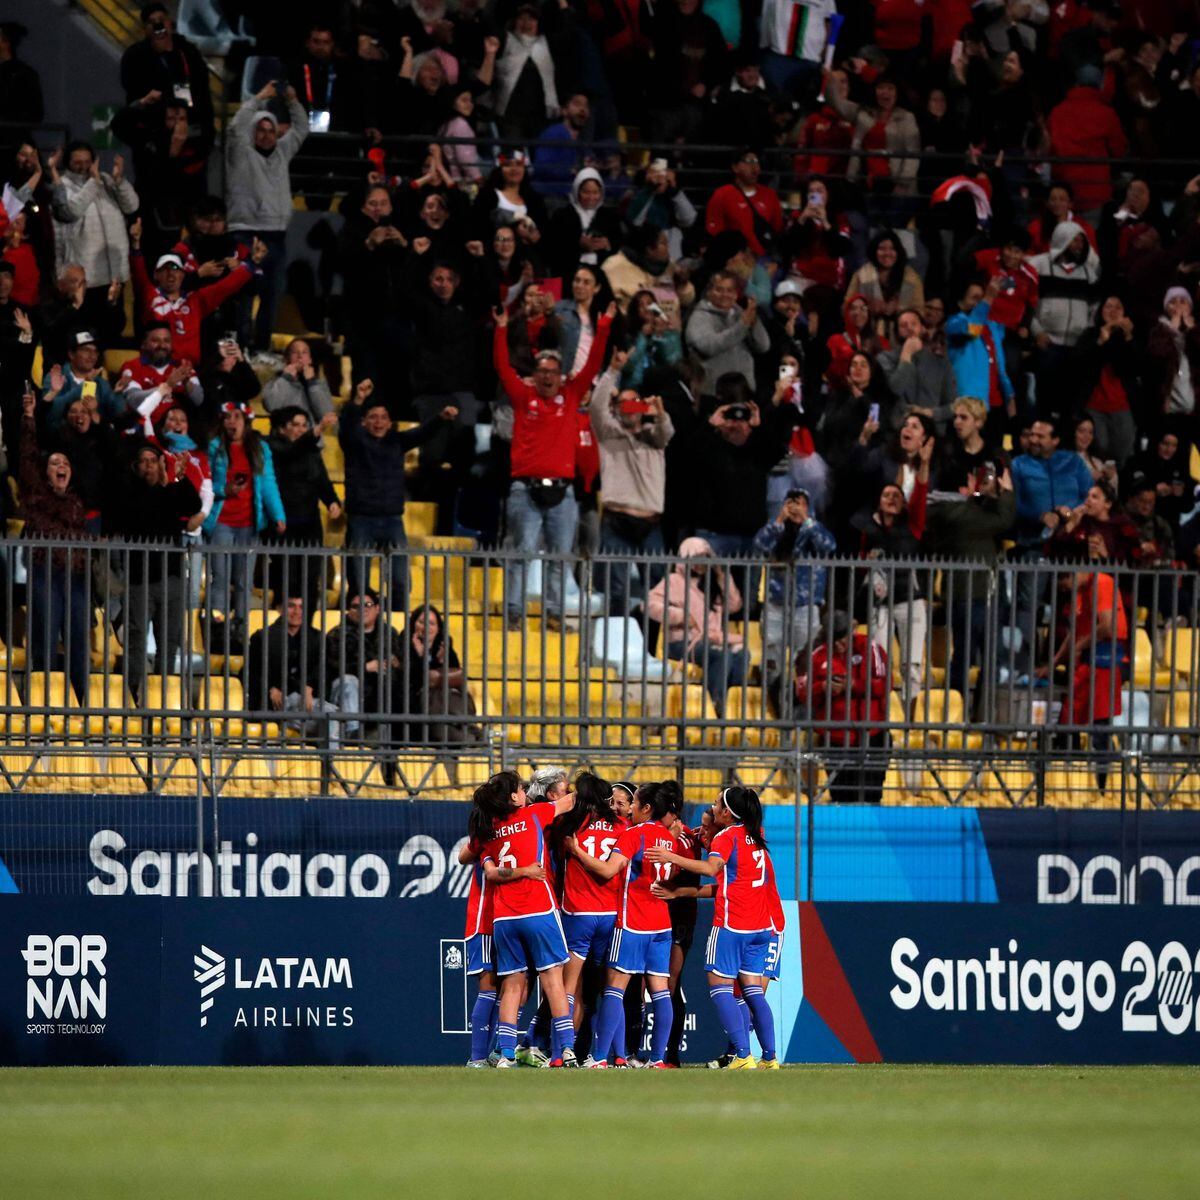 Futebol Feminino: México conquista o ouro do Pan diante do Chile